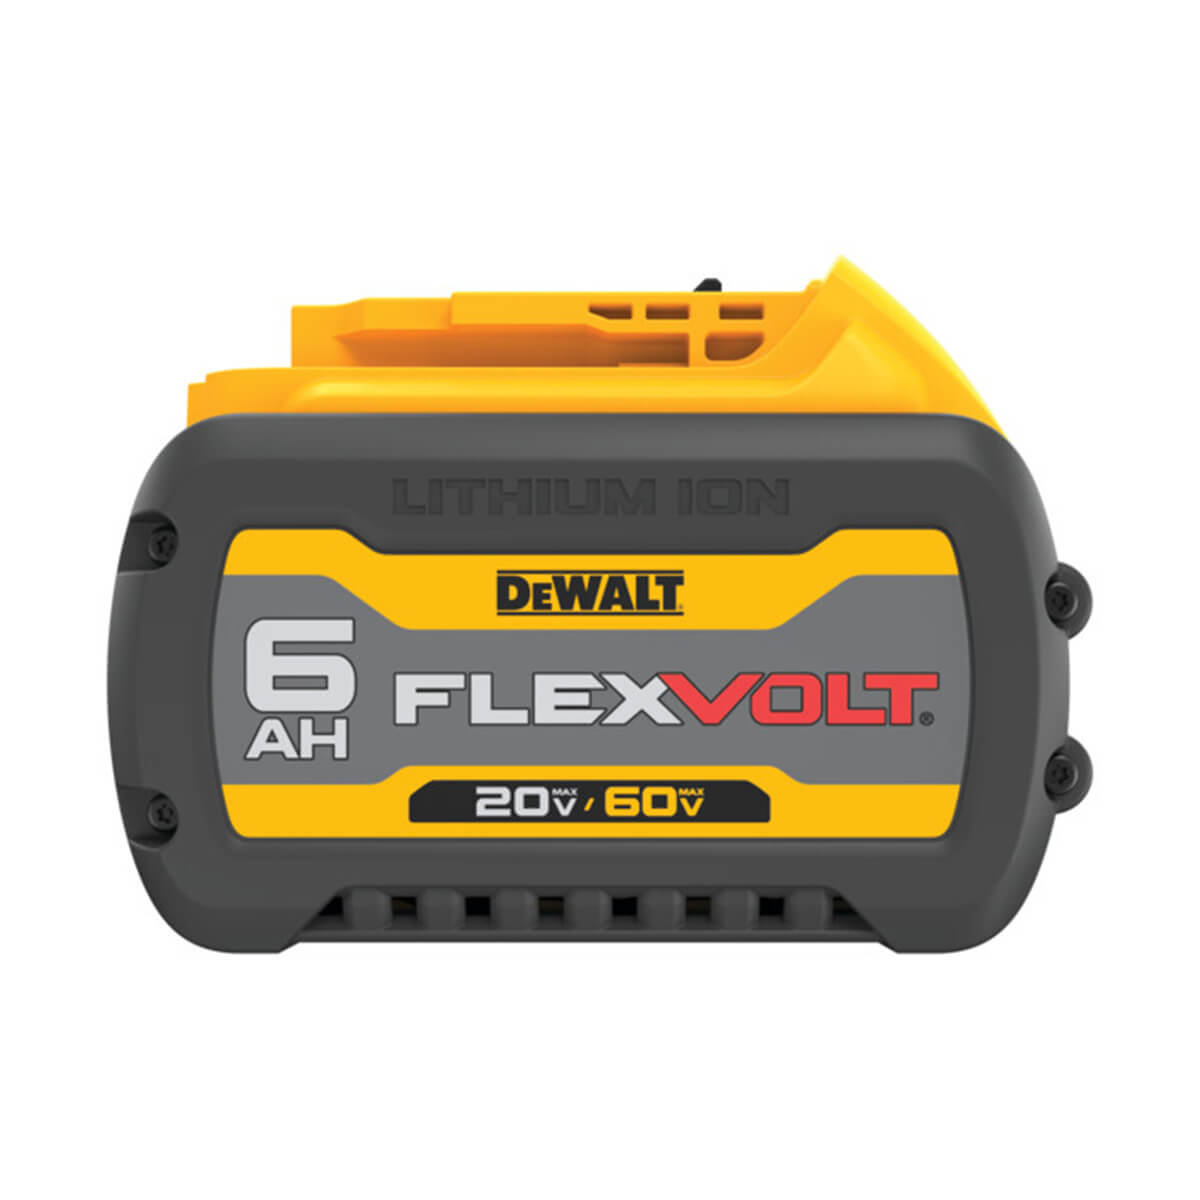 DEWALT Flexvolt 20V/60V Max Lithium-Ion 6.0 Ah Battery Pack